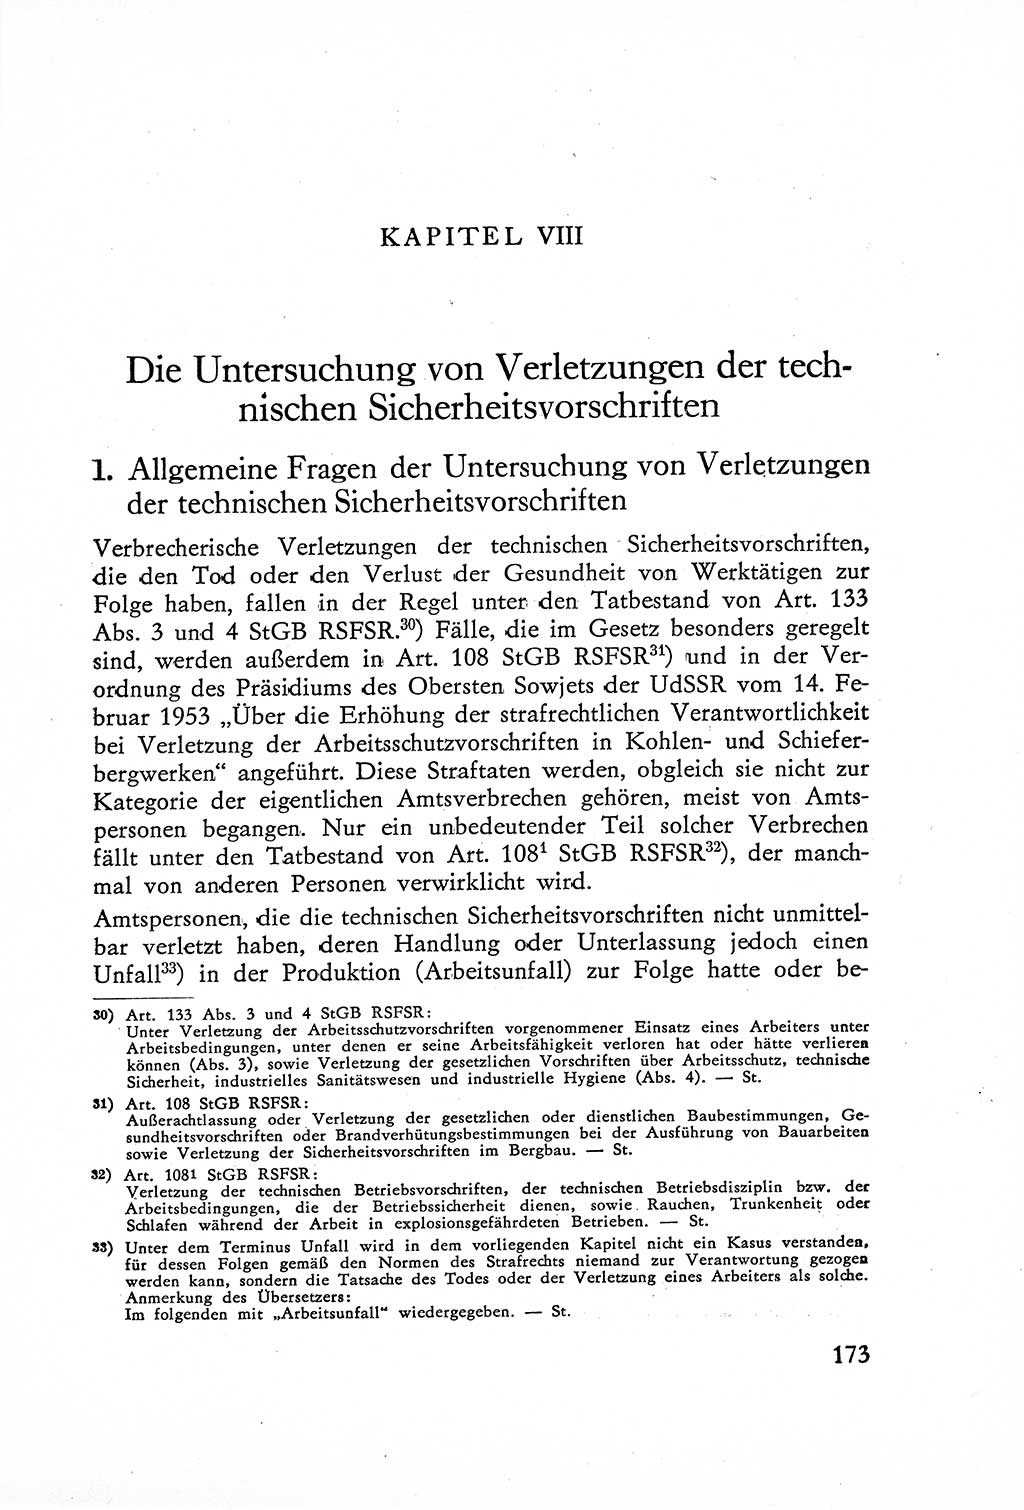 Die Untersuchung einzelner Verbrechensarten [Deutsche Demokratische Republik (DDR)] 1960, Seite 173 (Unters. Verbr.-Art. DDR 1960, S. 173)